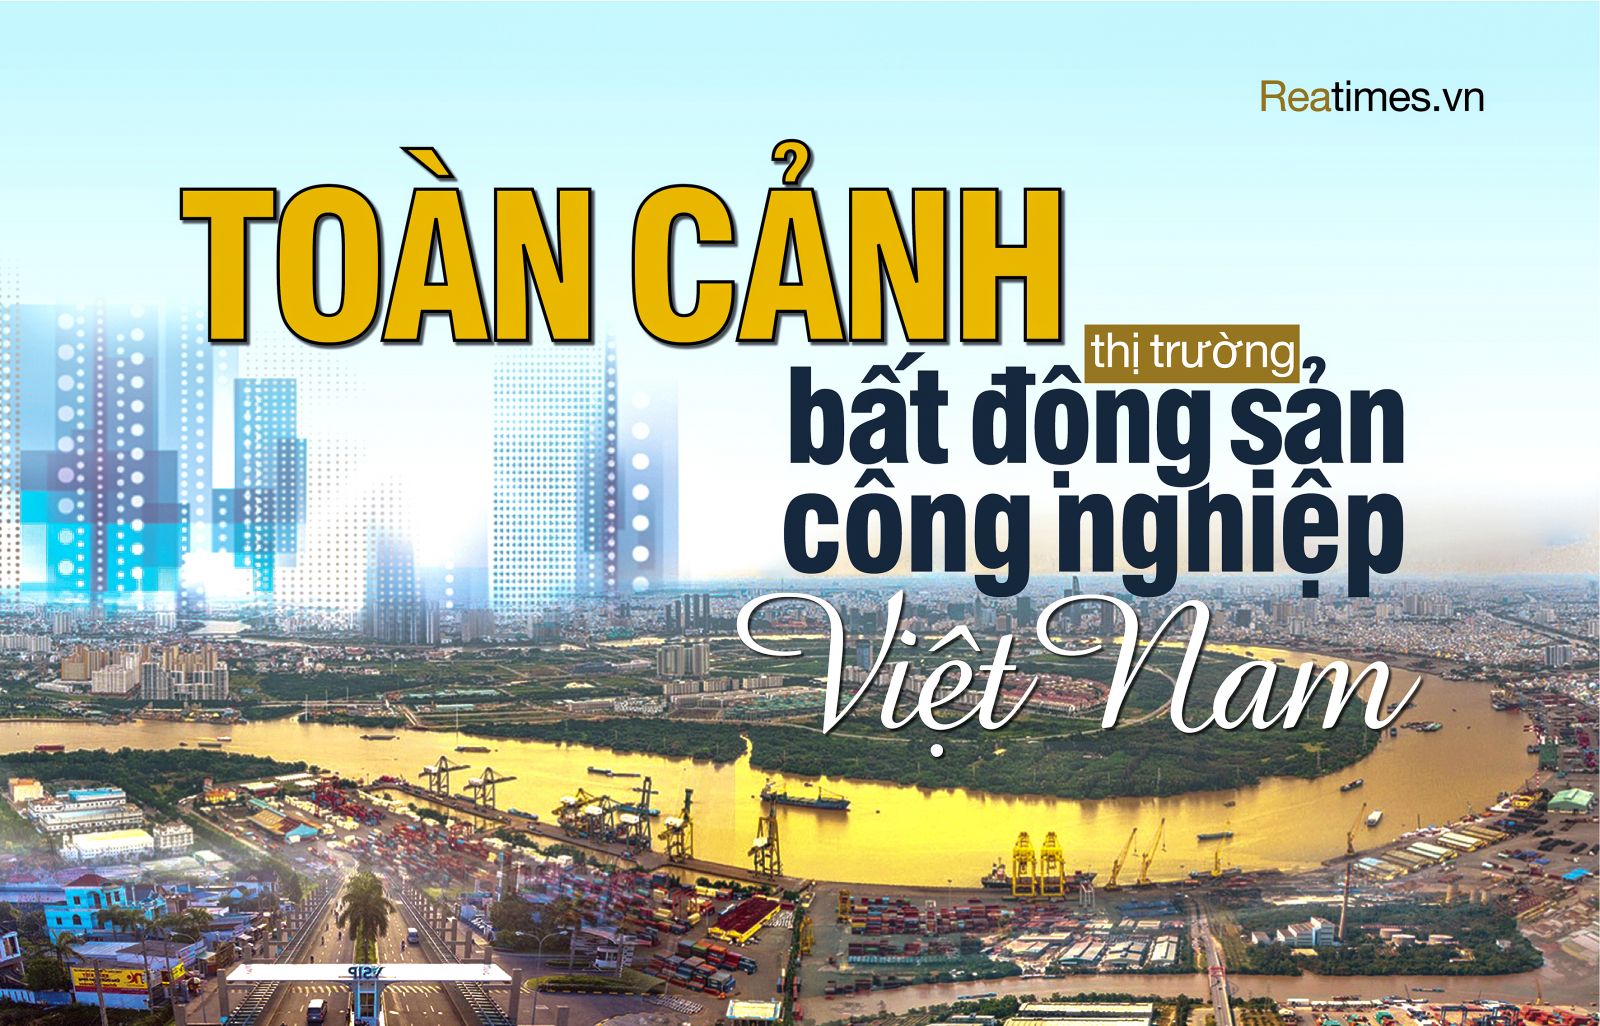 Bất động sản công nghiệp Việt Nam: “Ngôi sao hy vọng“ của thị trường 